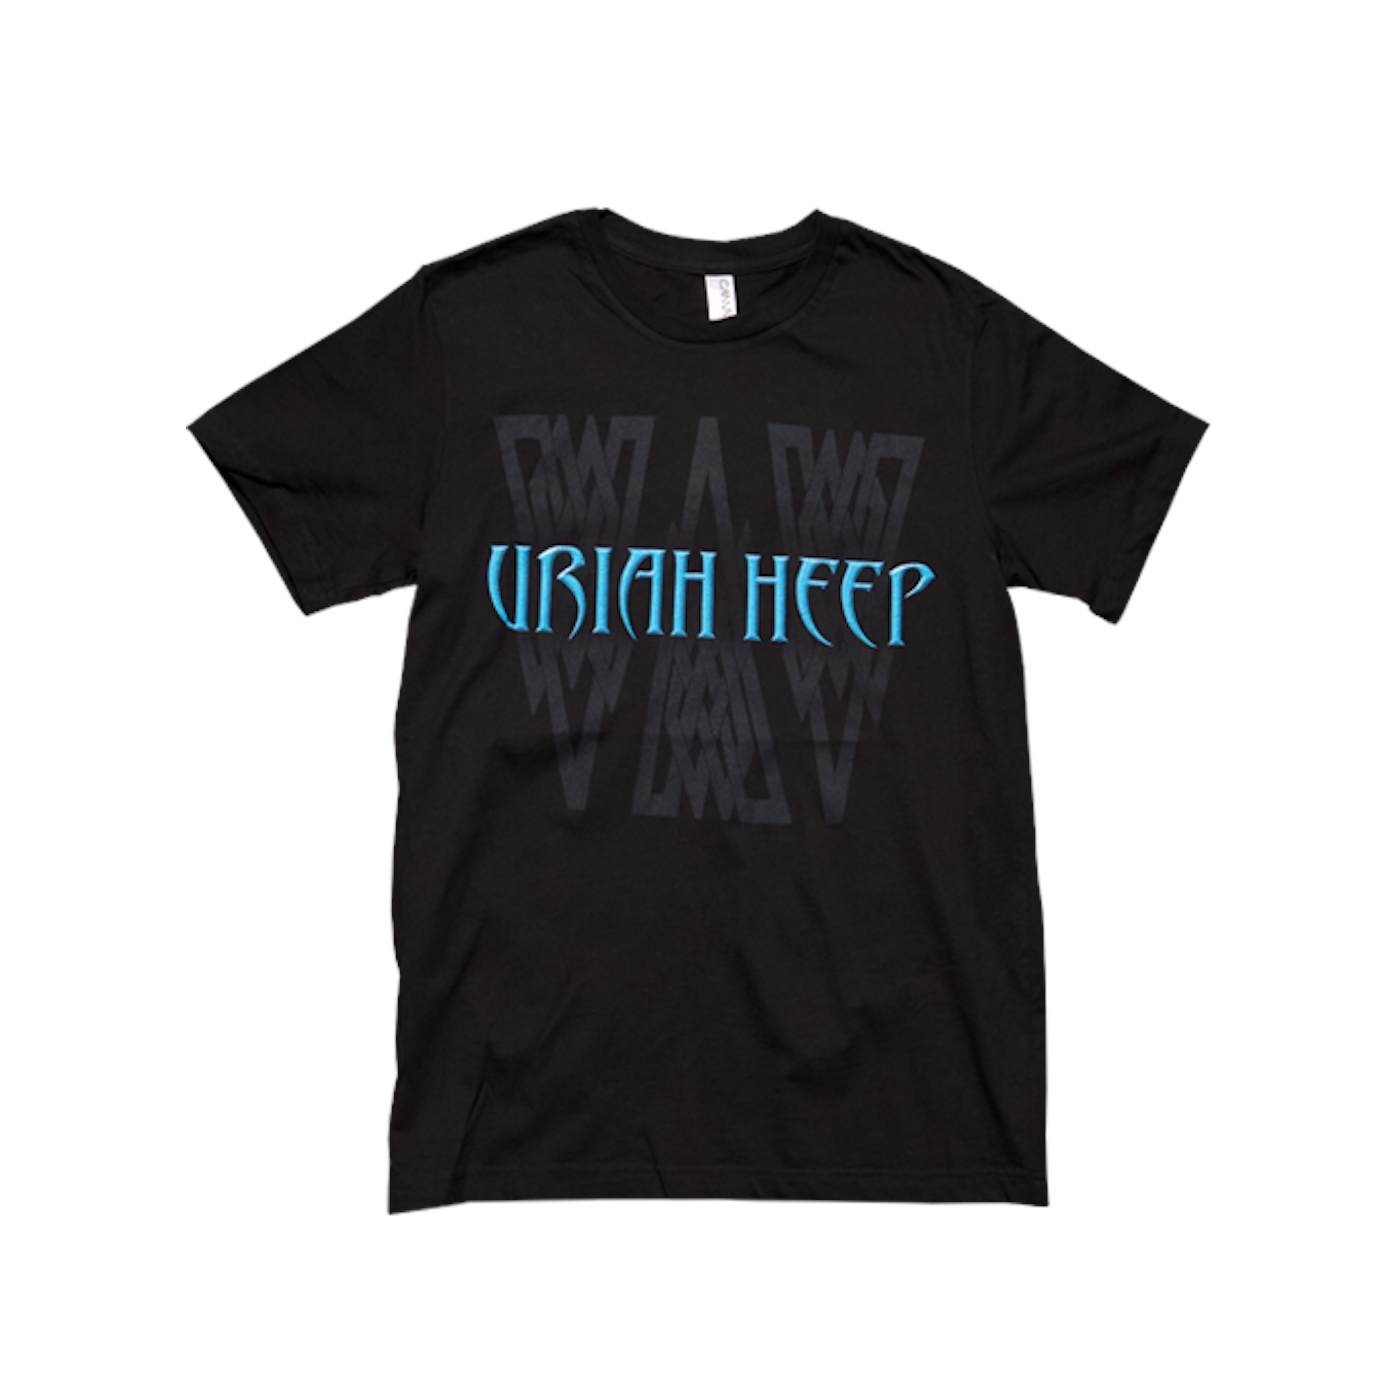 Uriah Heep "2012 Teal Logo" T-Shirt